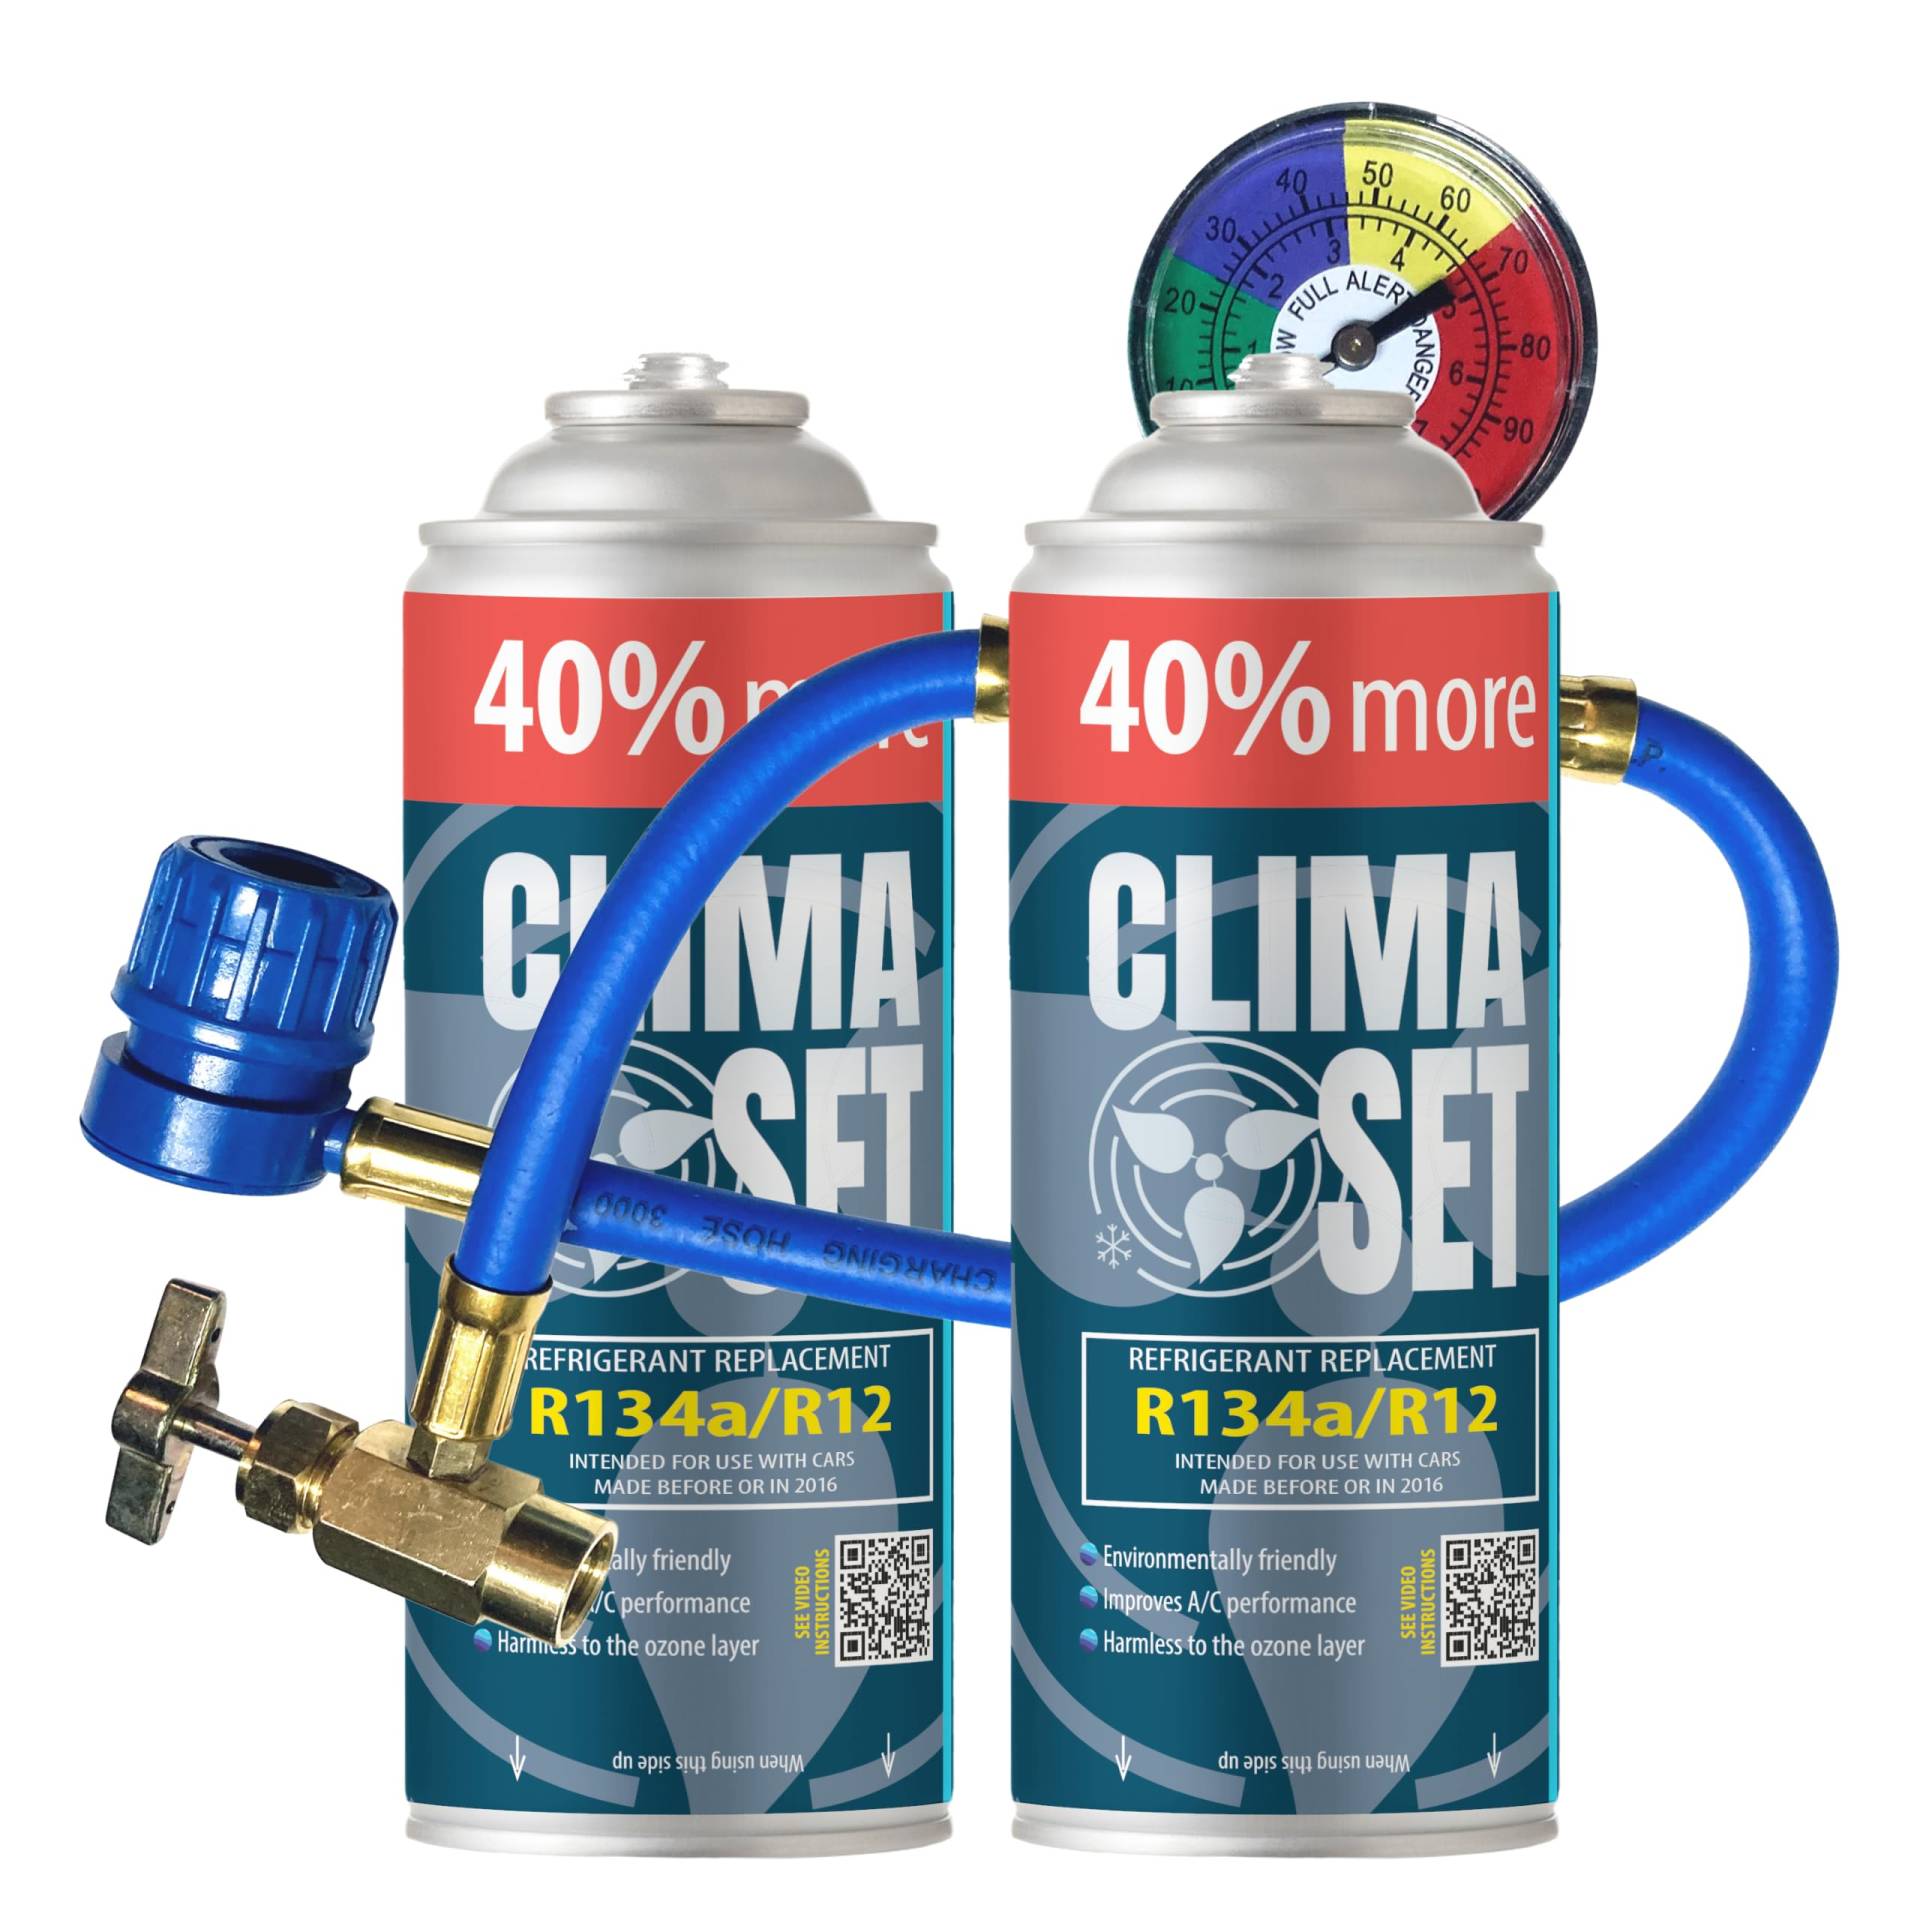 ClimaSet R134a kältemittel Ersatzgas - Kühlmittel Klima Auto - Gasflasche 2x235 g Auto Klimaanlage Nachfüllset - Wohnmobil - Klimaanlage schlauch - Manometer Klimaanlage - ECO von Clima Set